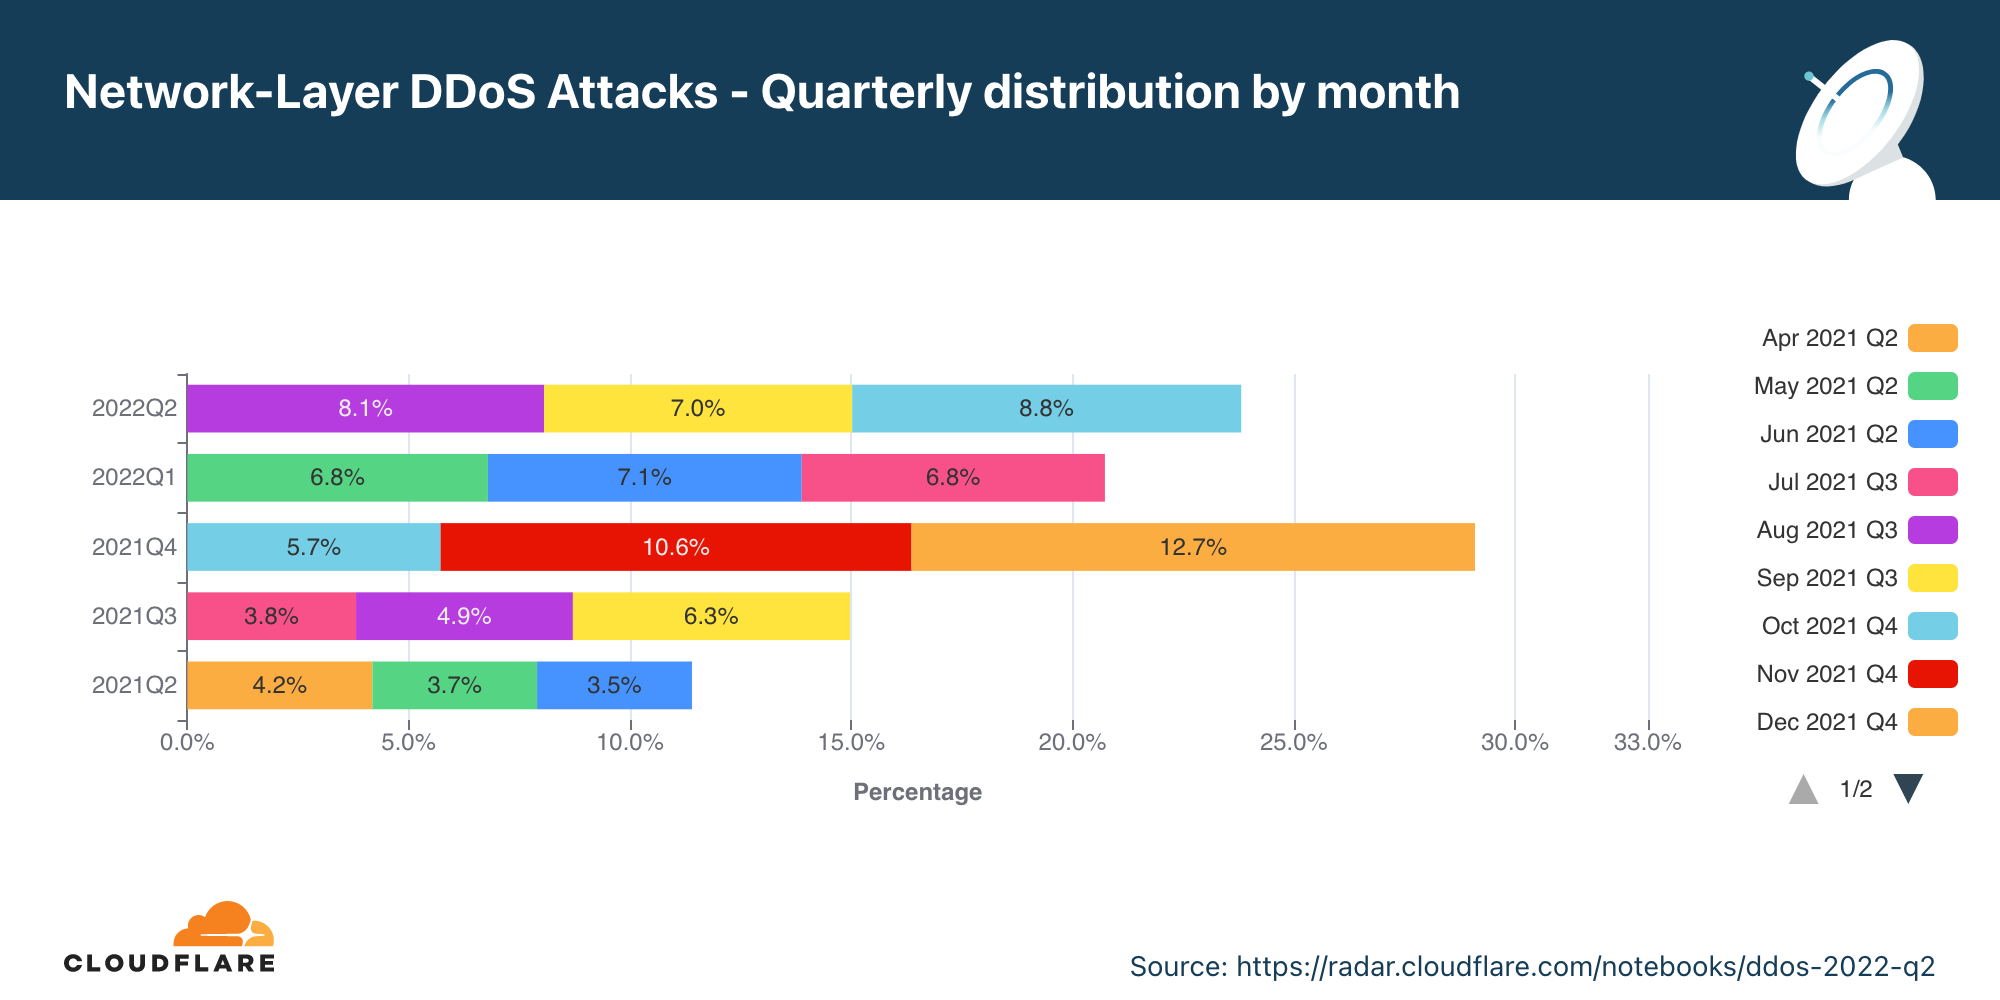 Gráfico de la distribución anual de los ataques DDoS a la capa de red por mes en los últimos 12 meses